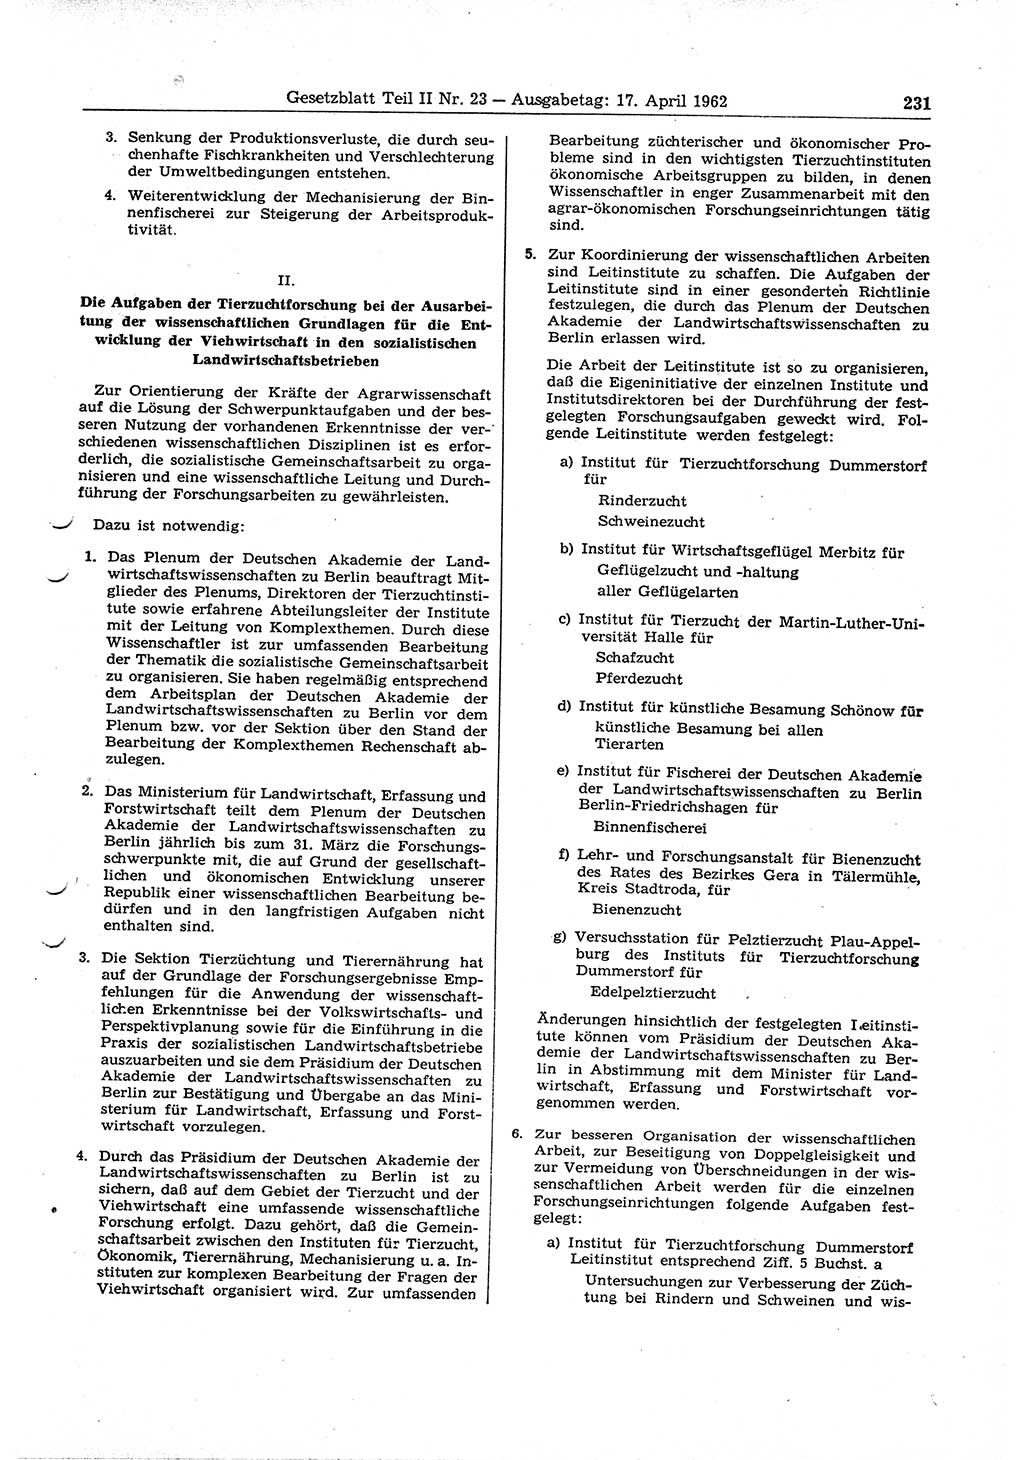 Gesetzblatt (GBl.) der Deutschen Demokratischen Republik (DDR) Teil ⅠⅠ 1962, Seite 231 (GBl. DDR ⅠⅠ 1962, S. 231)